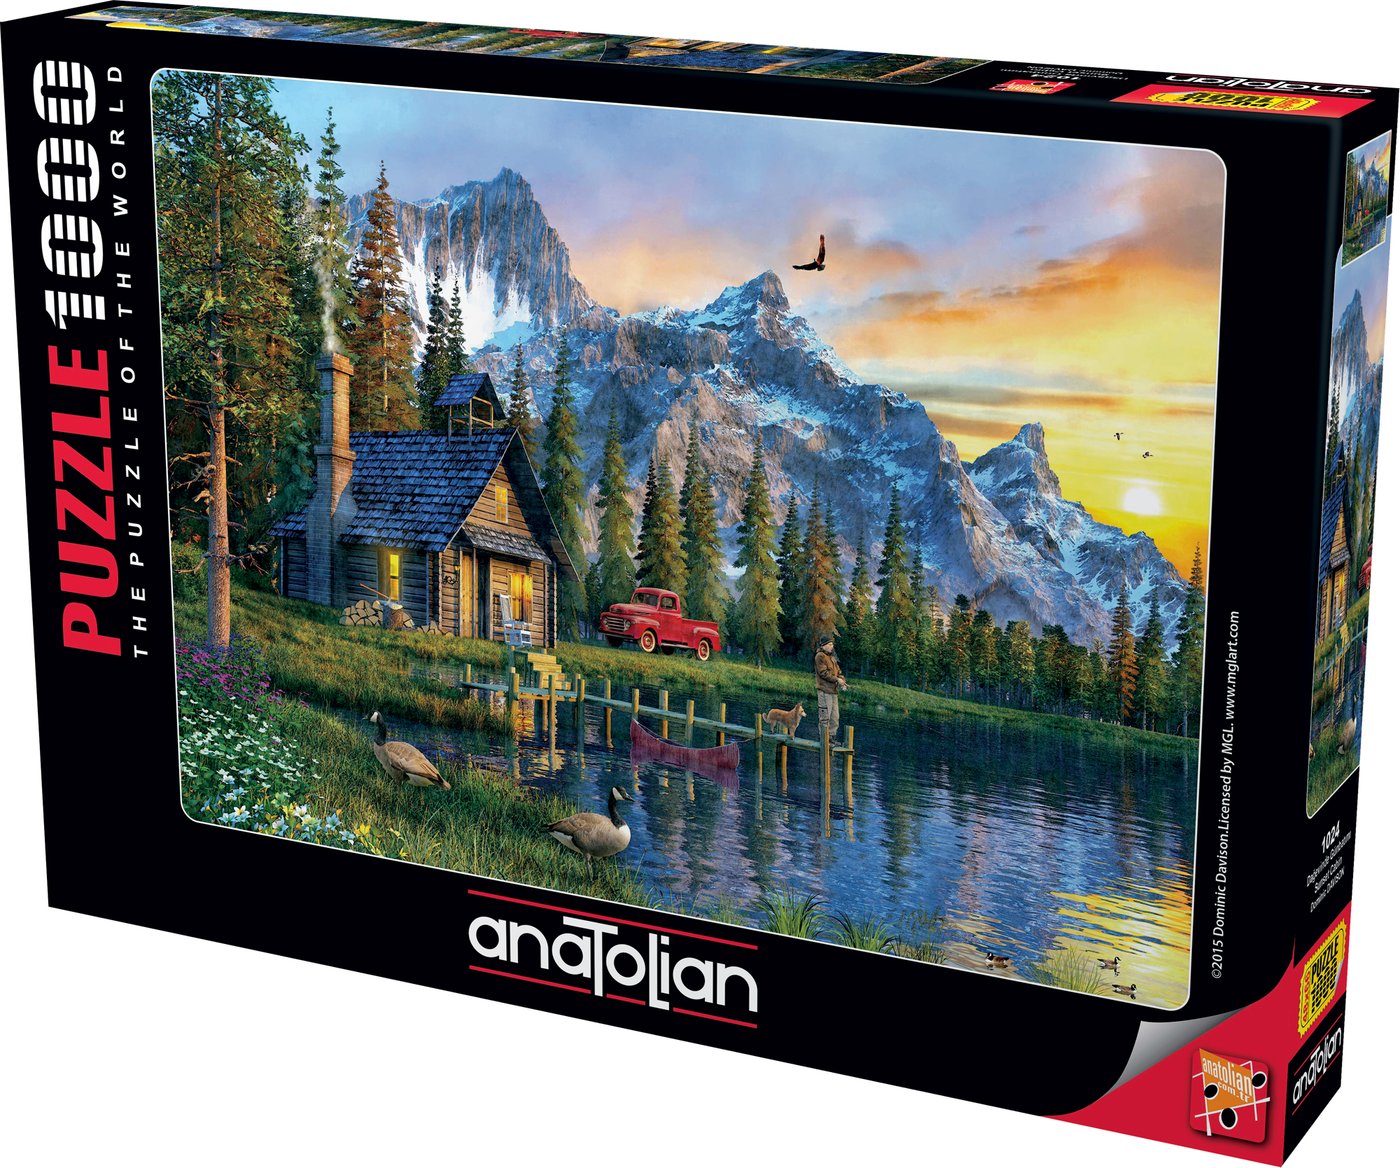 Anatolian - Dominic Davison - Sunset Cabin - 1000 Piece Jigsaw Puzzle